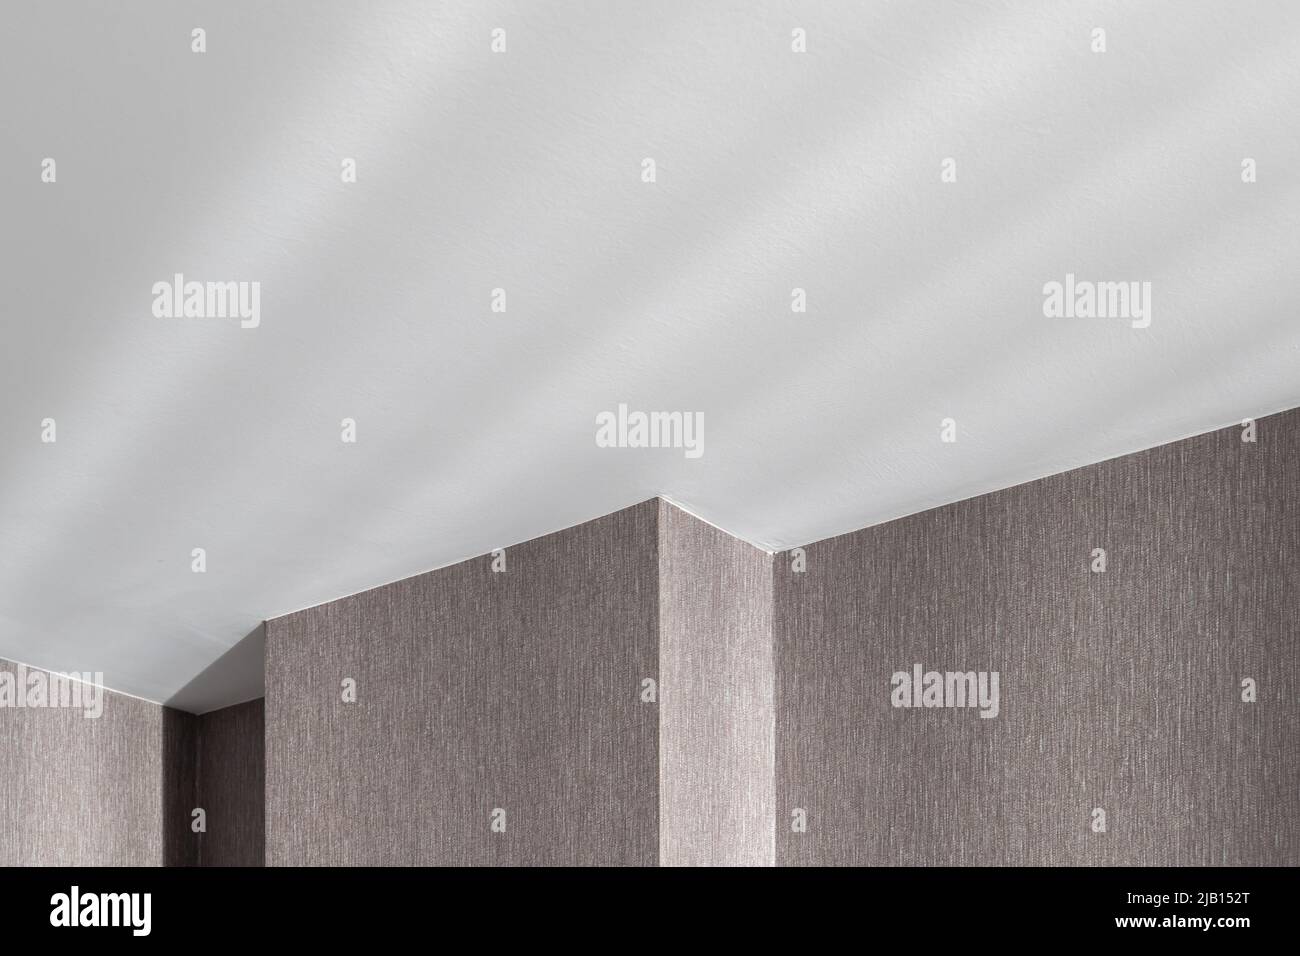 Abstraktes Architekturhintergrundfoto, Wand und weiße Decke eines leeren Rauminnenraums Stockfoto